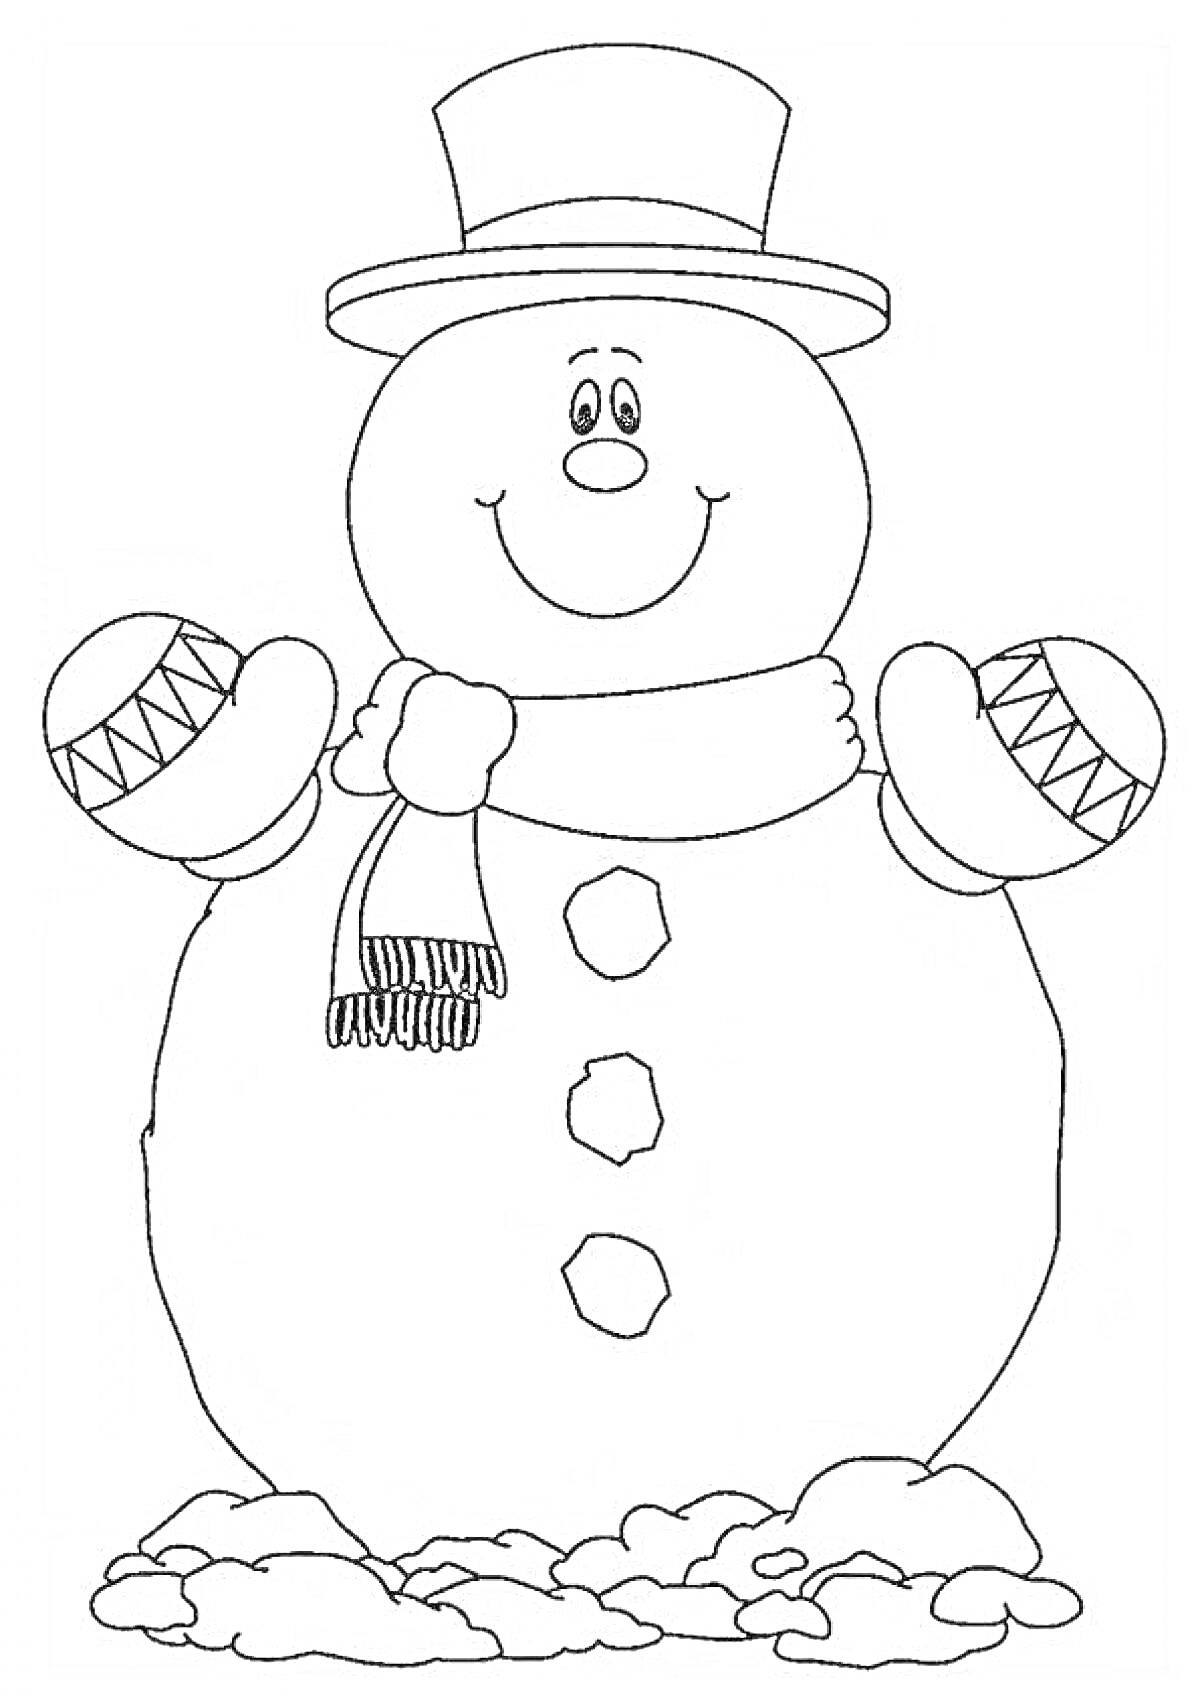 Раскраска Снеговик с ведром на голове, в шарфе и рукавичках, стоящий на снеге.